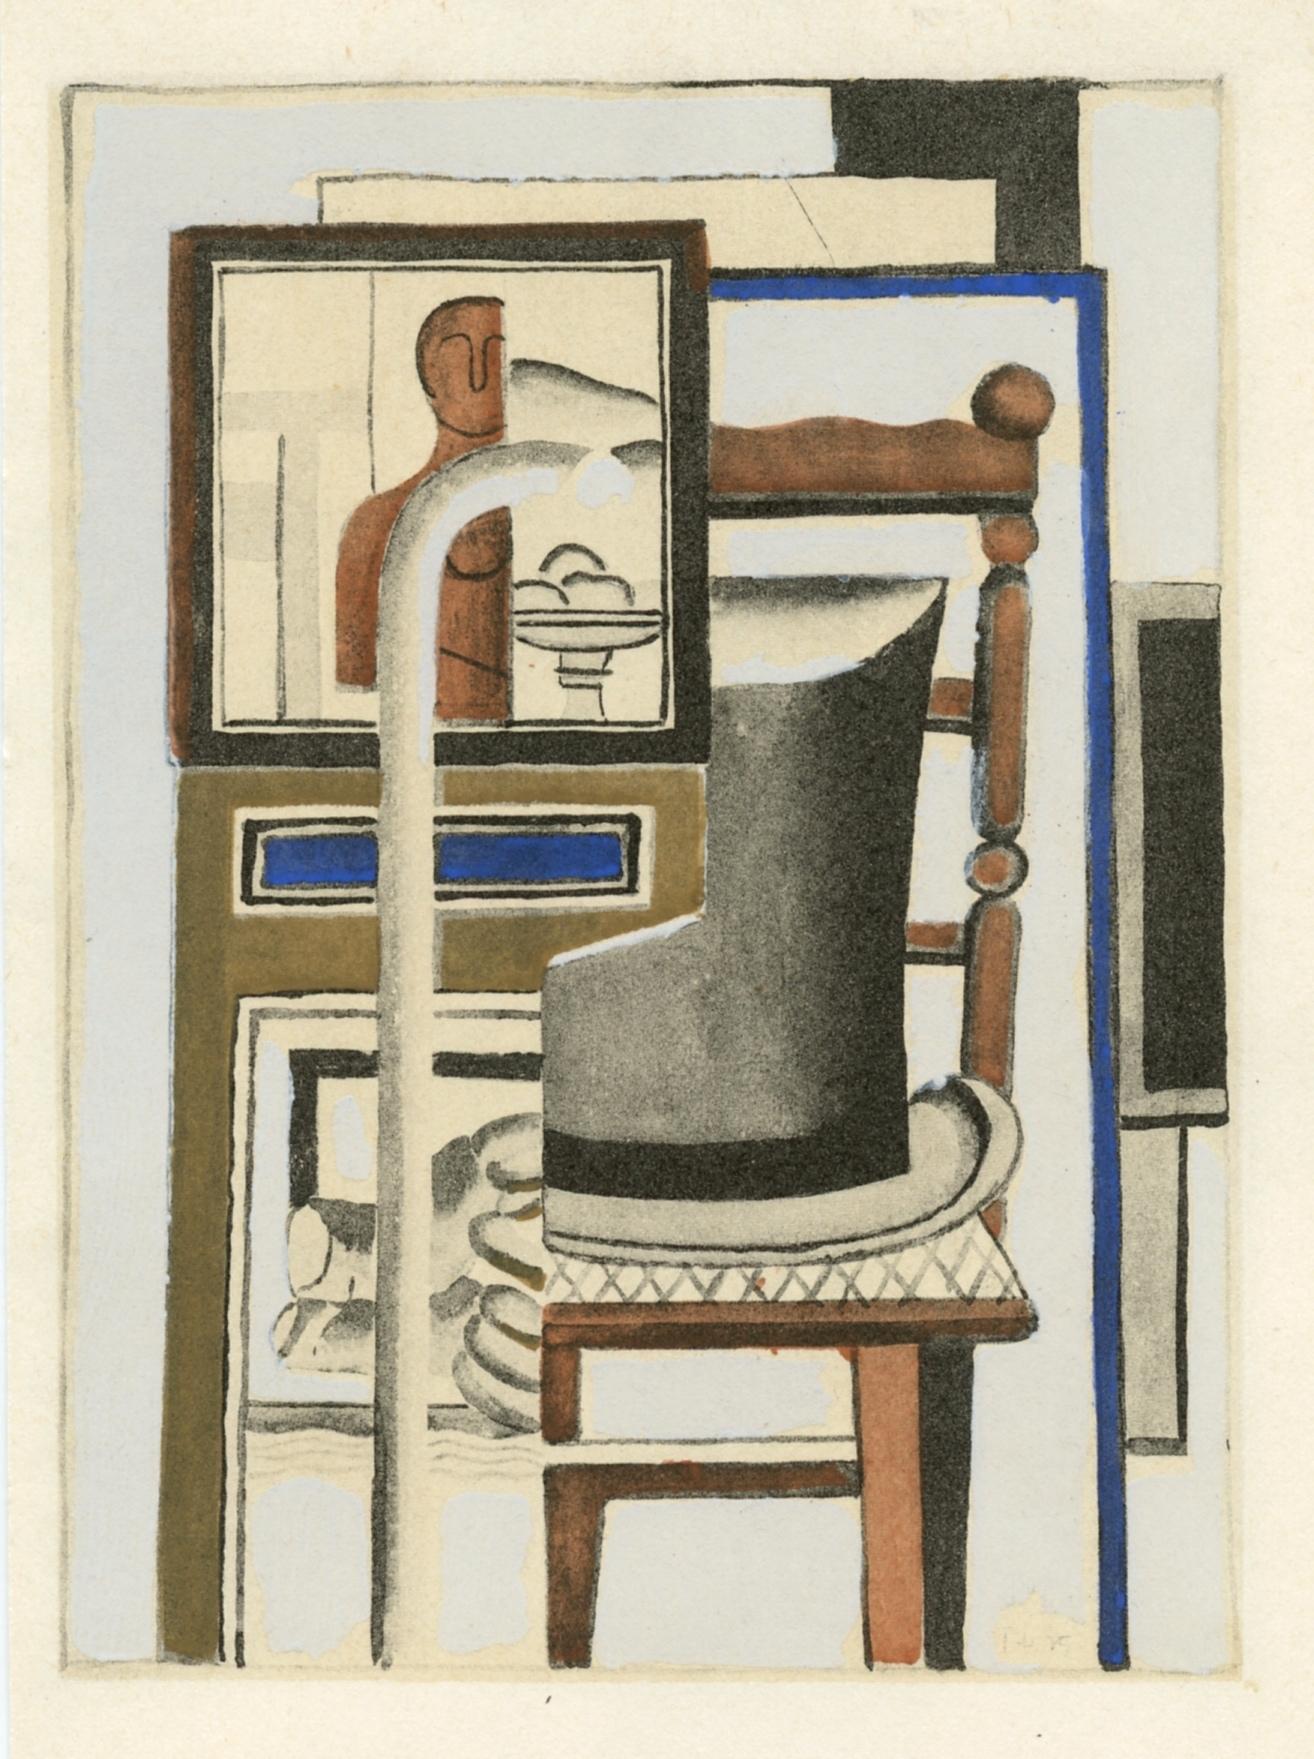 La haute de forme, pochoir - Print de (after) Fernand Léger